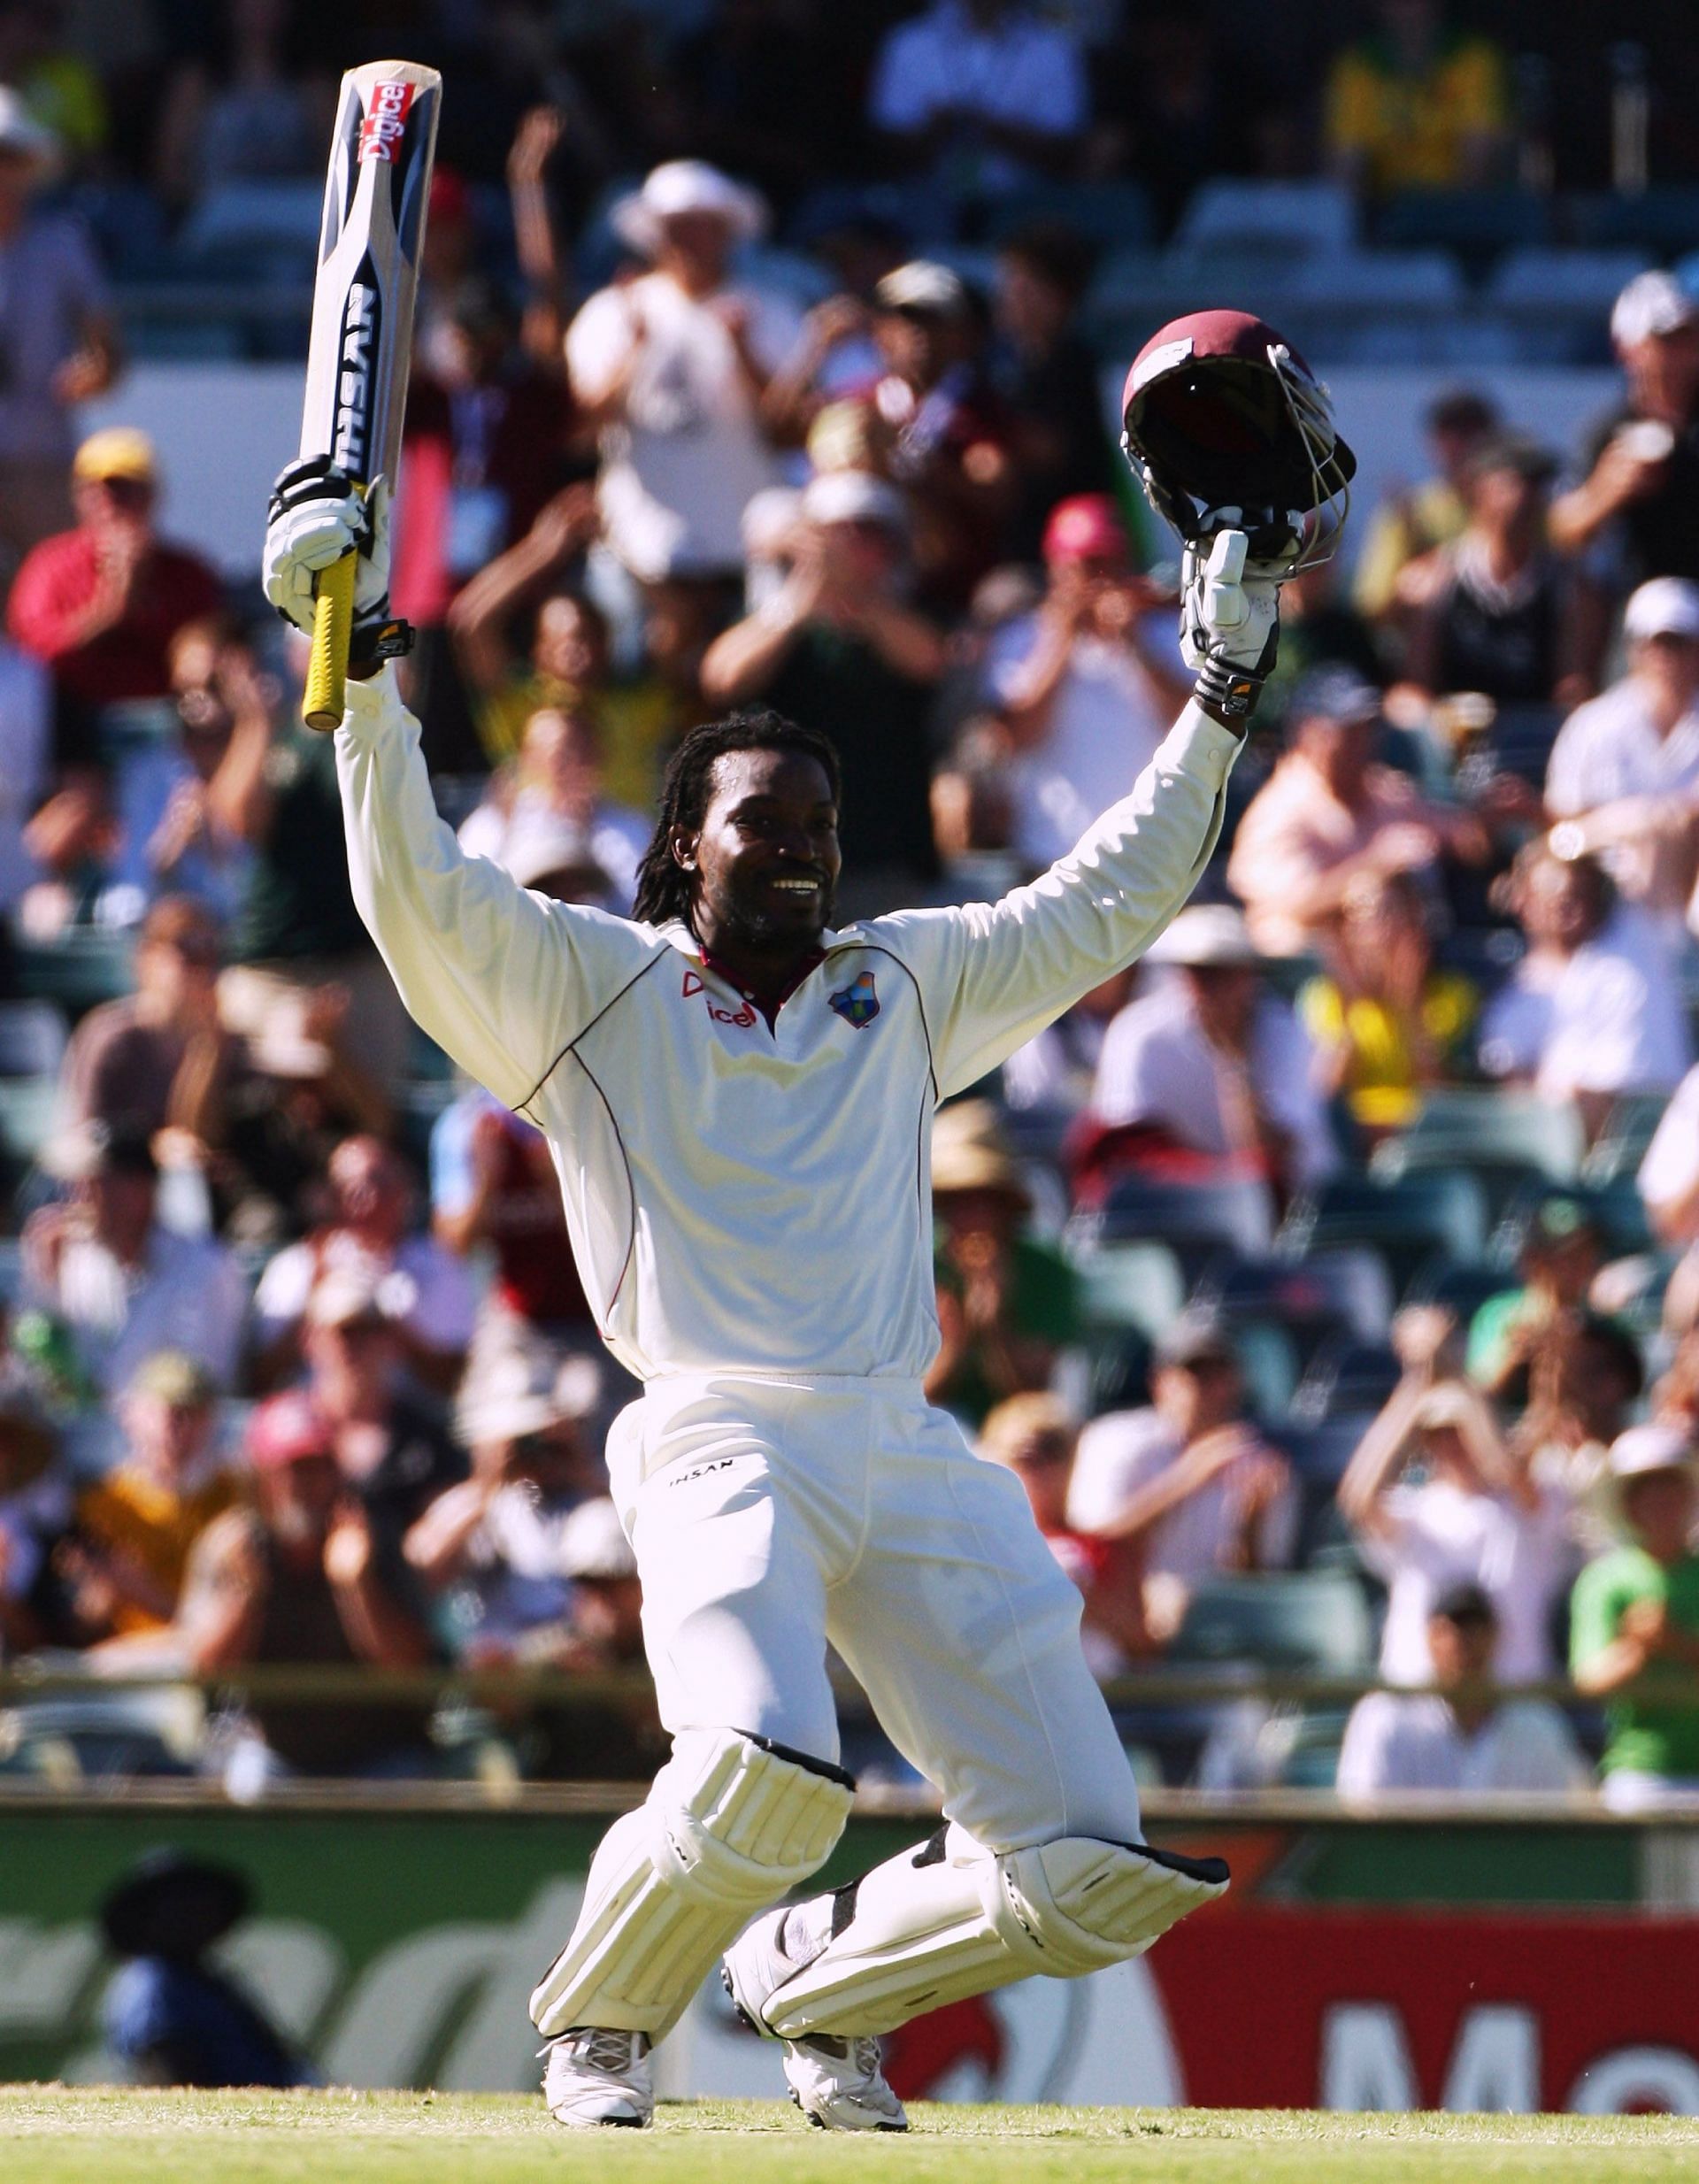 Third Test - Australia v West Indies: Day 2